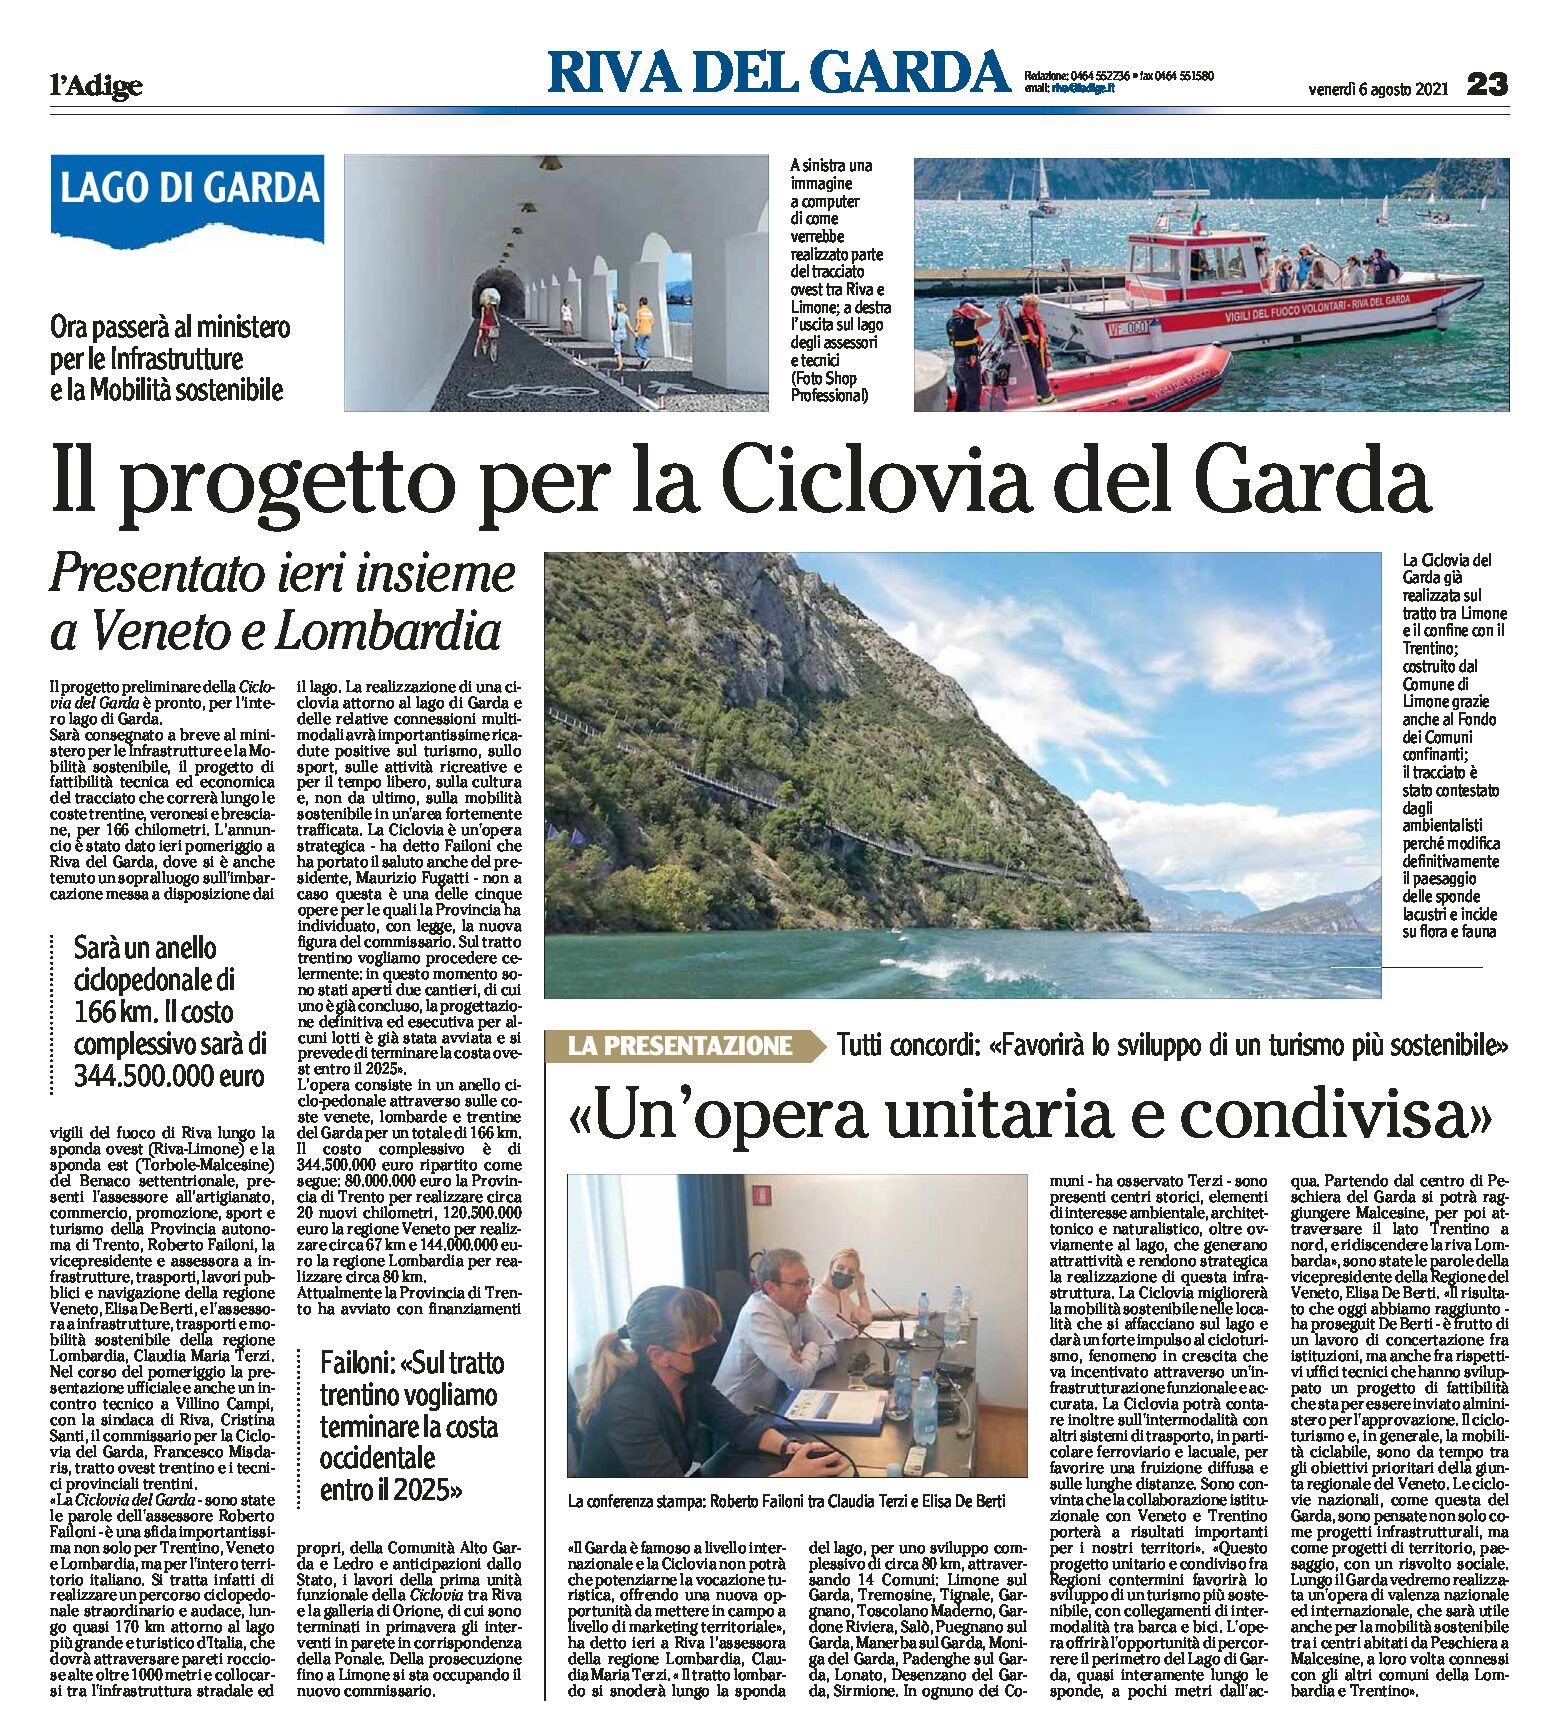 Ciclovia del Garda: il progetto presentato insieme a Veneto e Lombardia, sarà un anello di 166 km